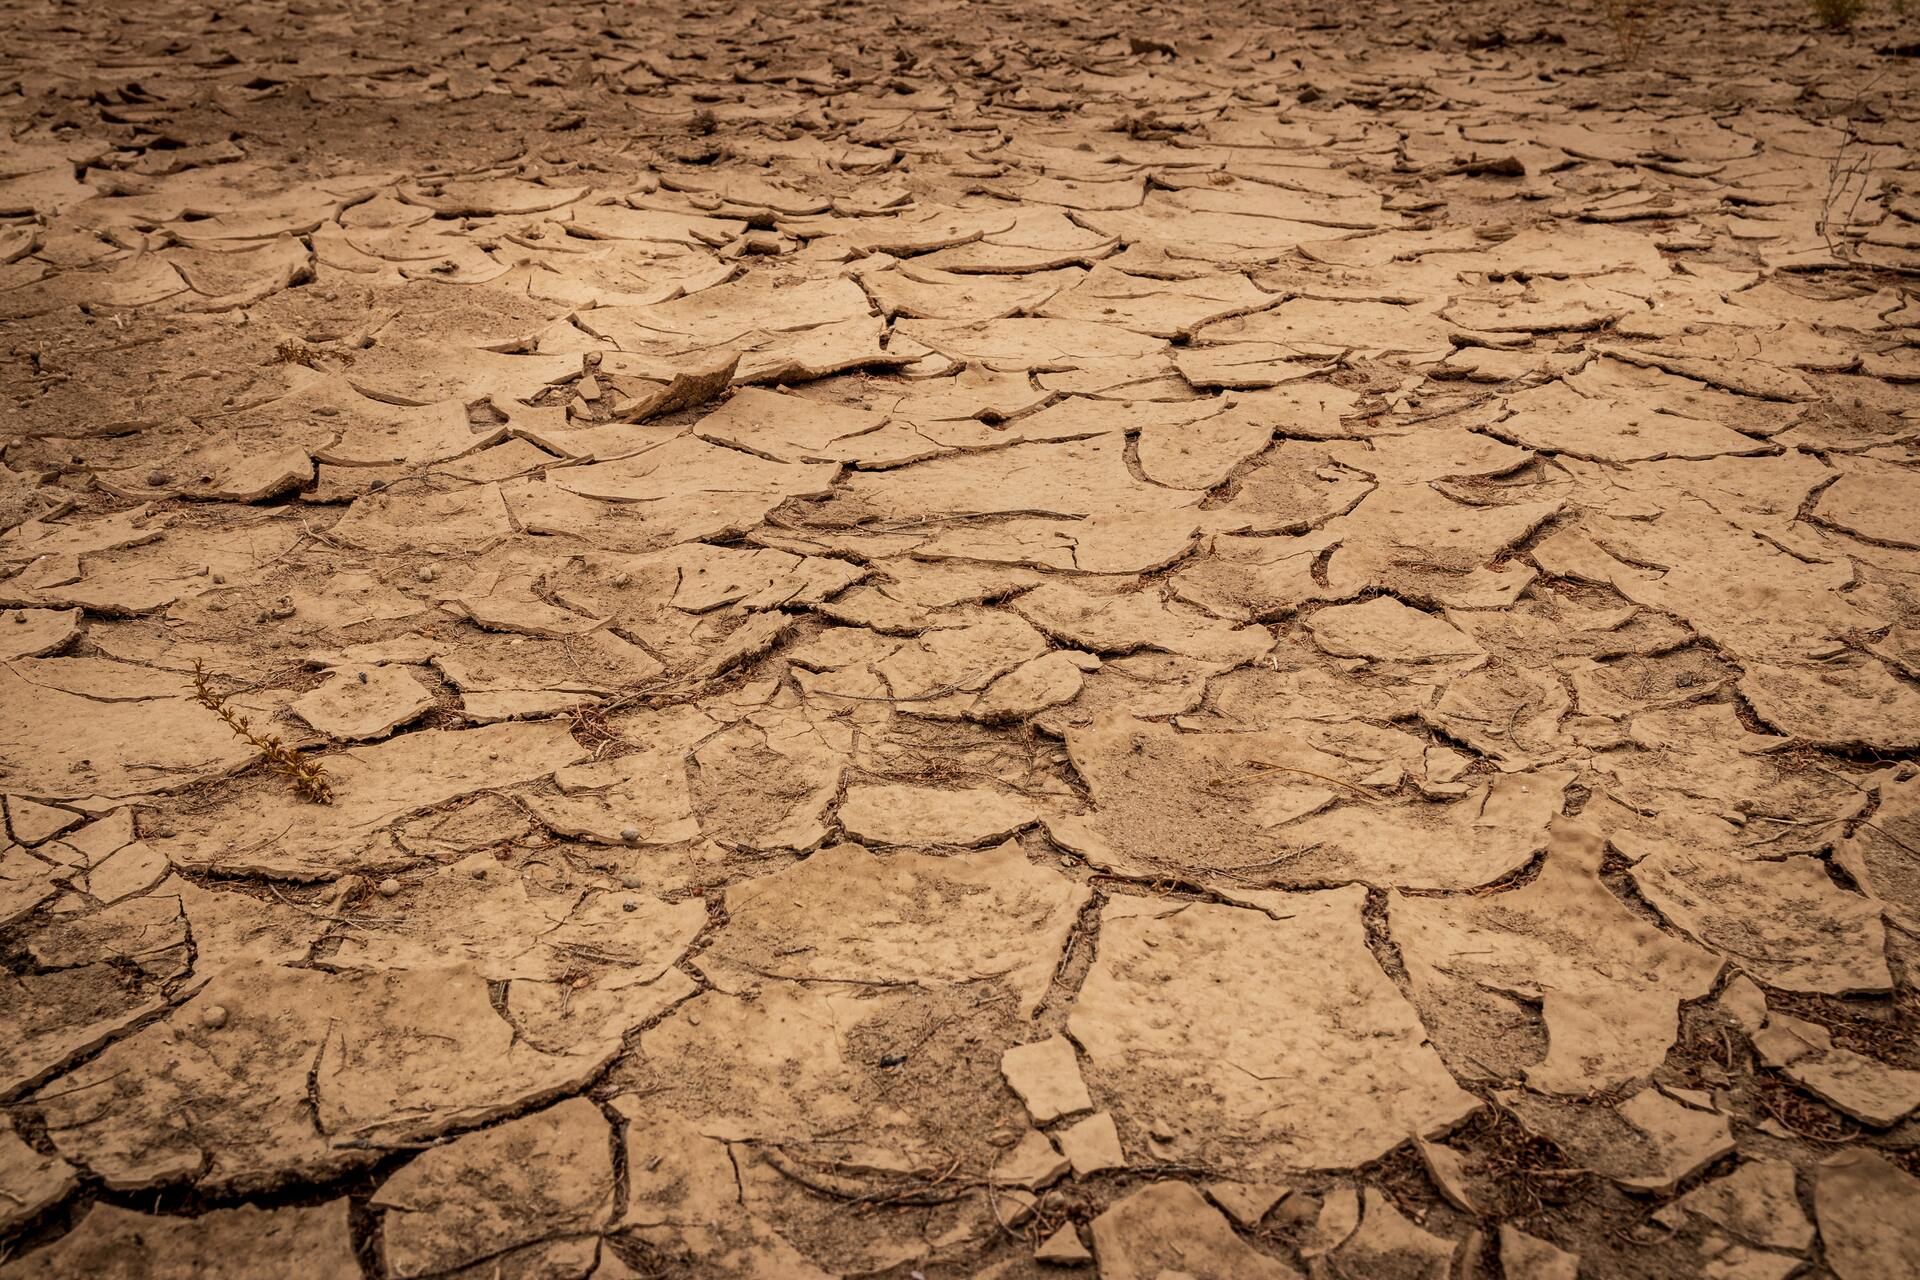 Sequía provoca pérdidas 'casi totales' en la producción agrícola de Argentina